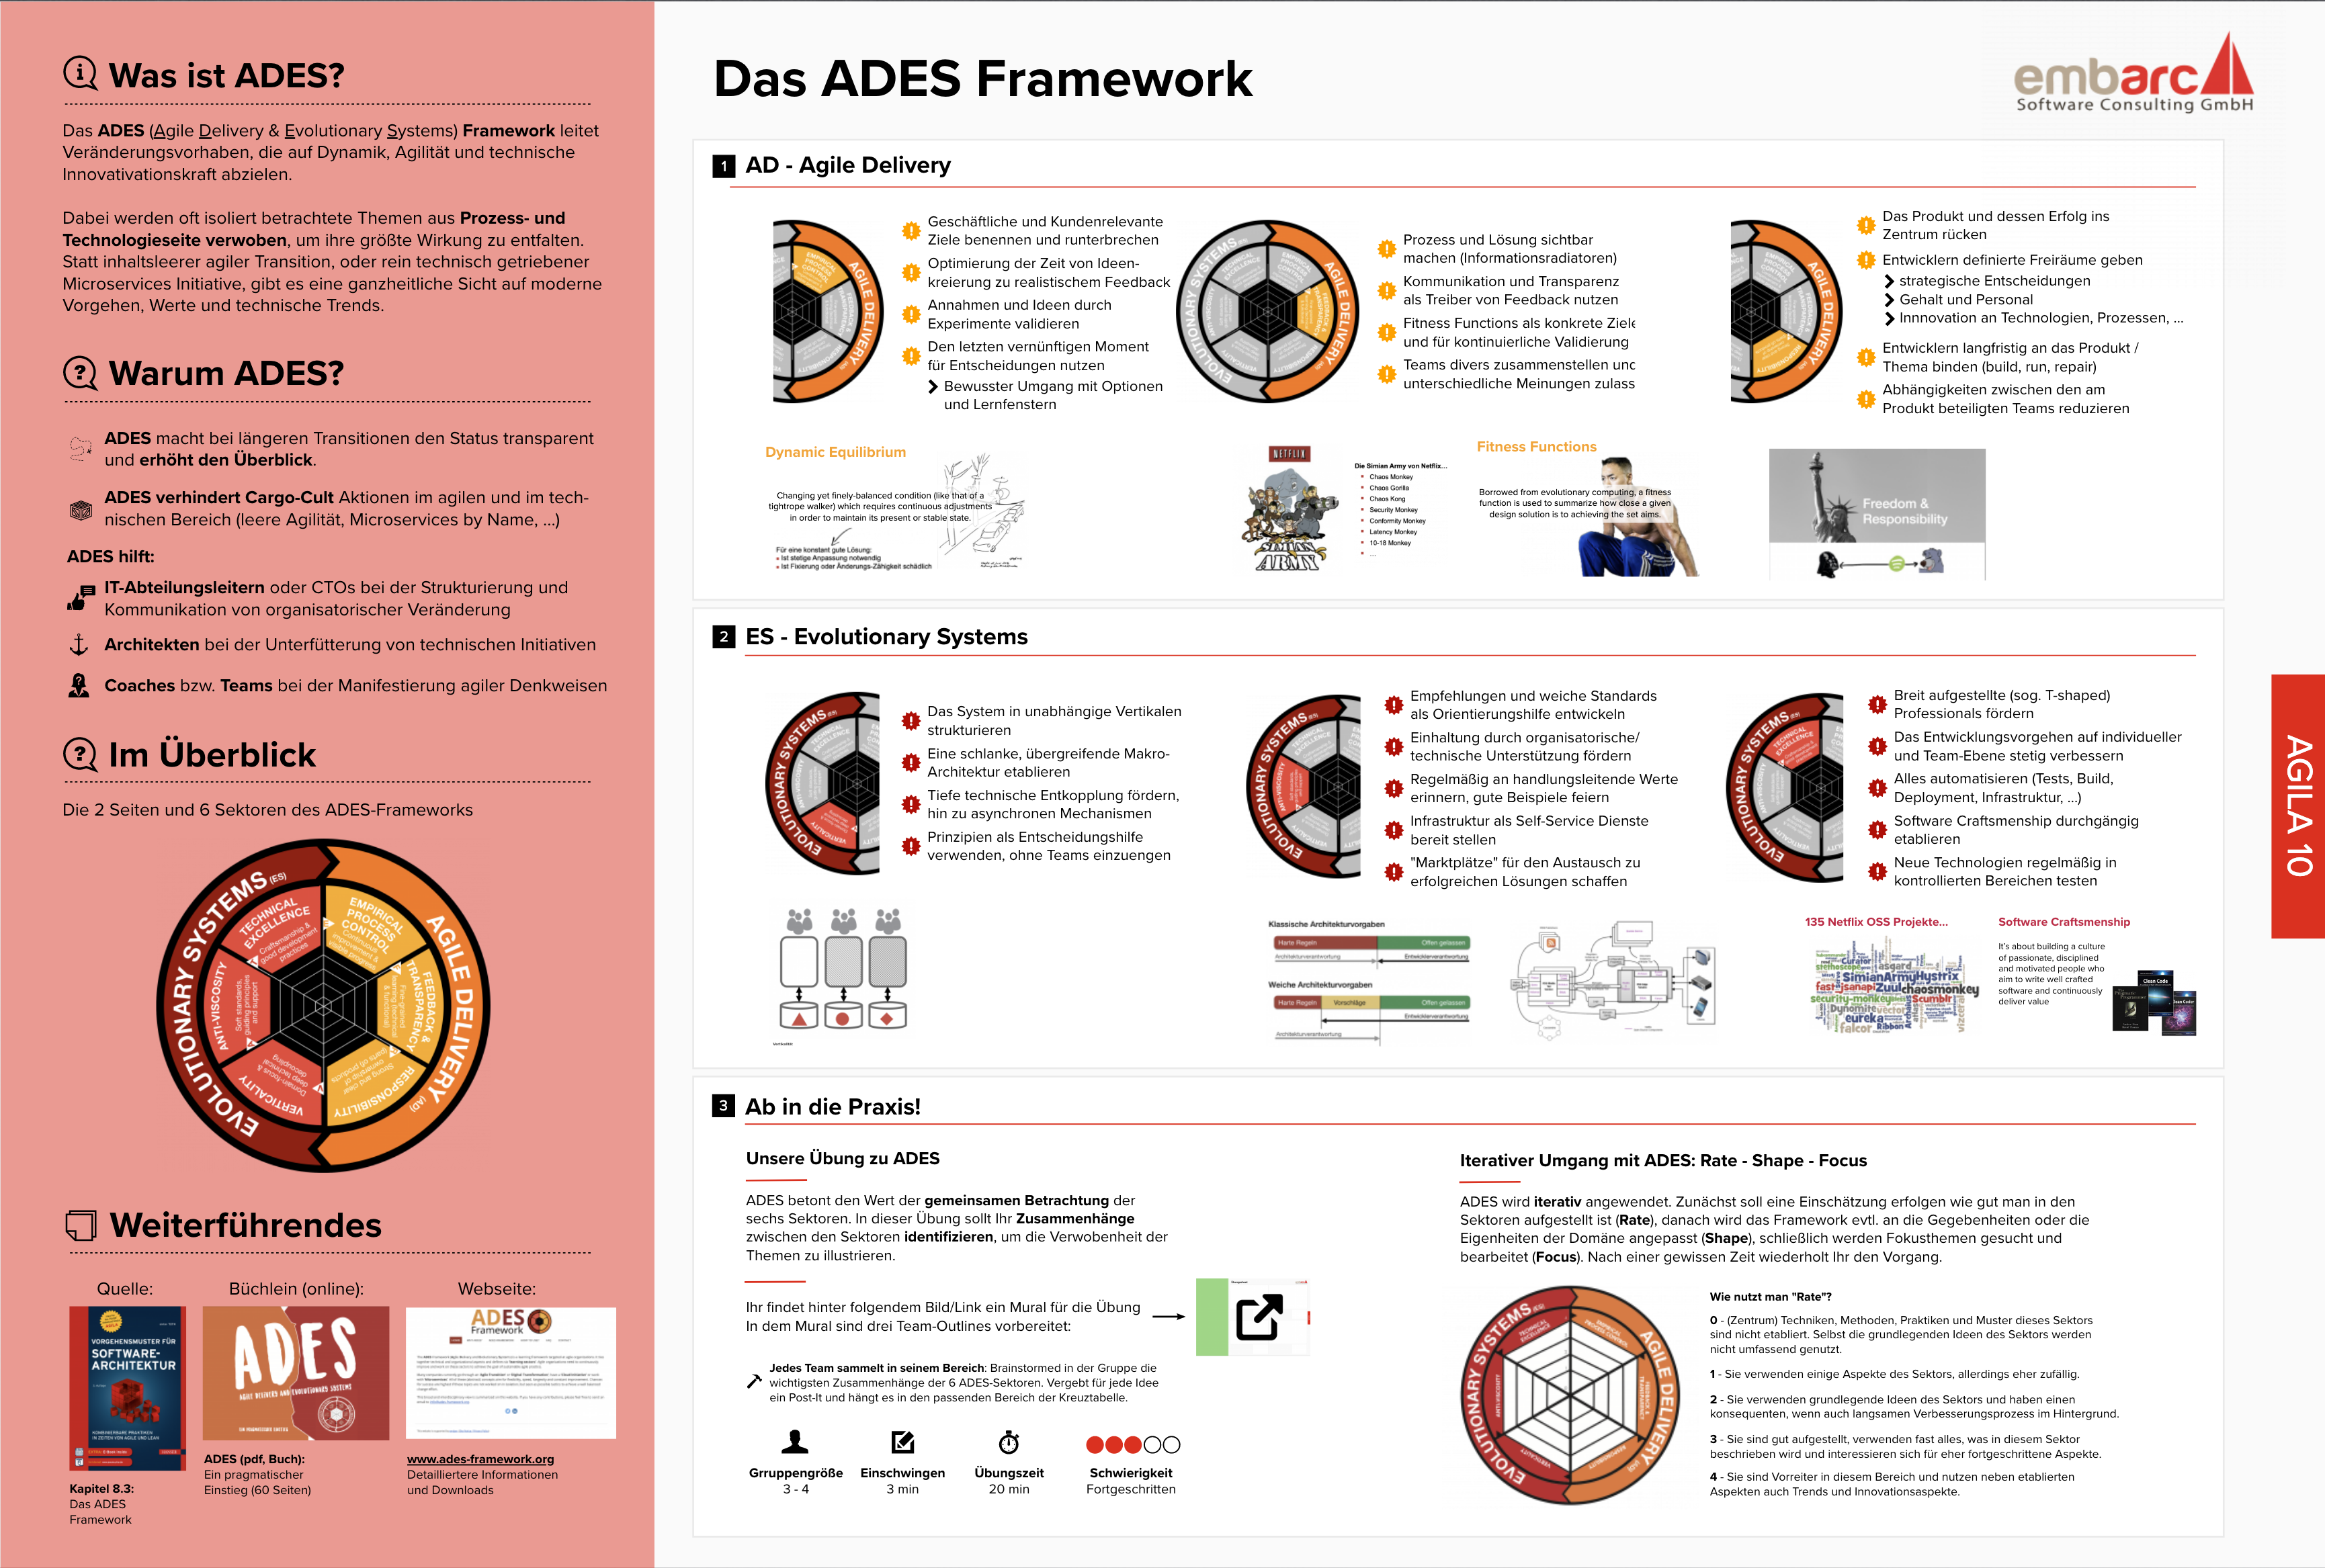 Mural zum ADES Framework